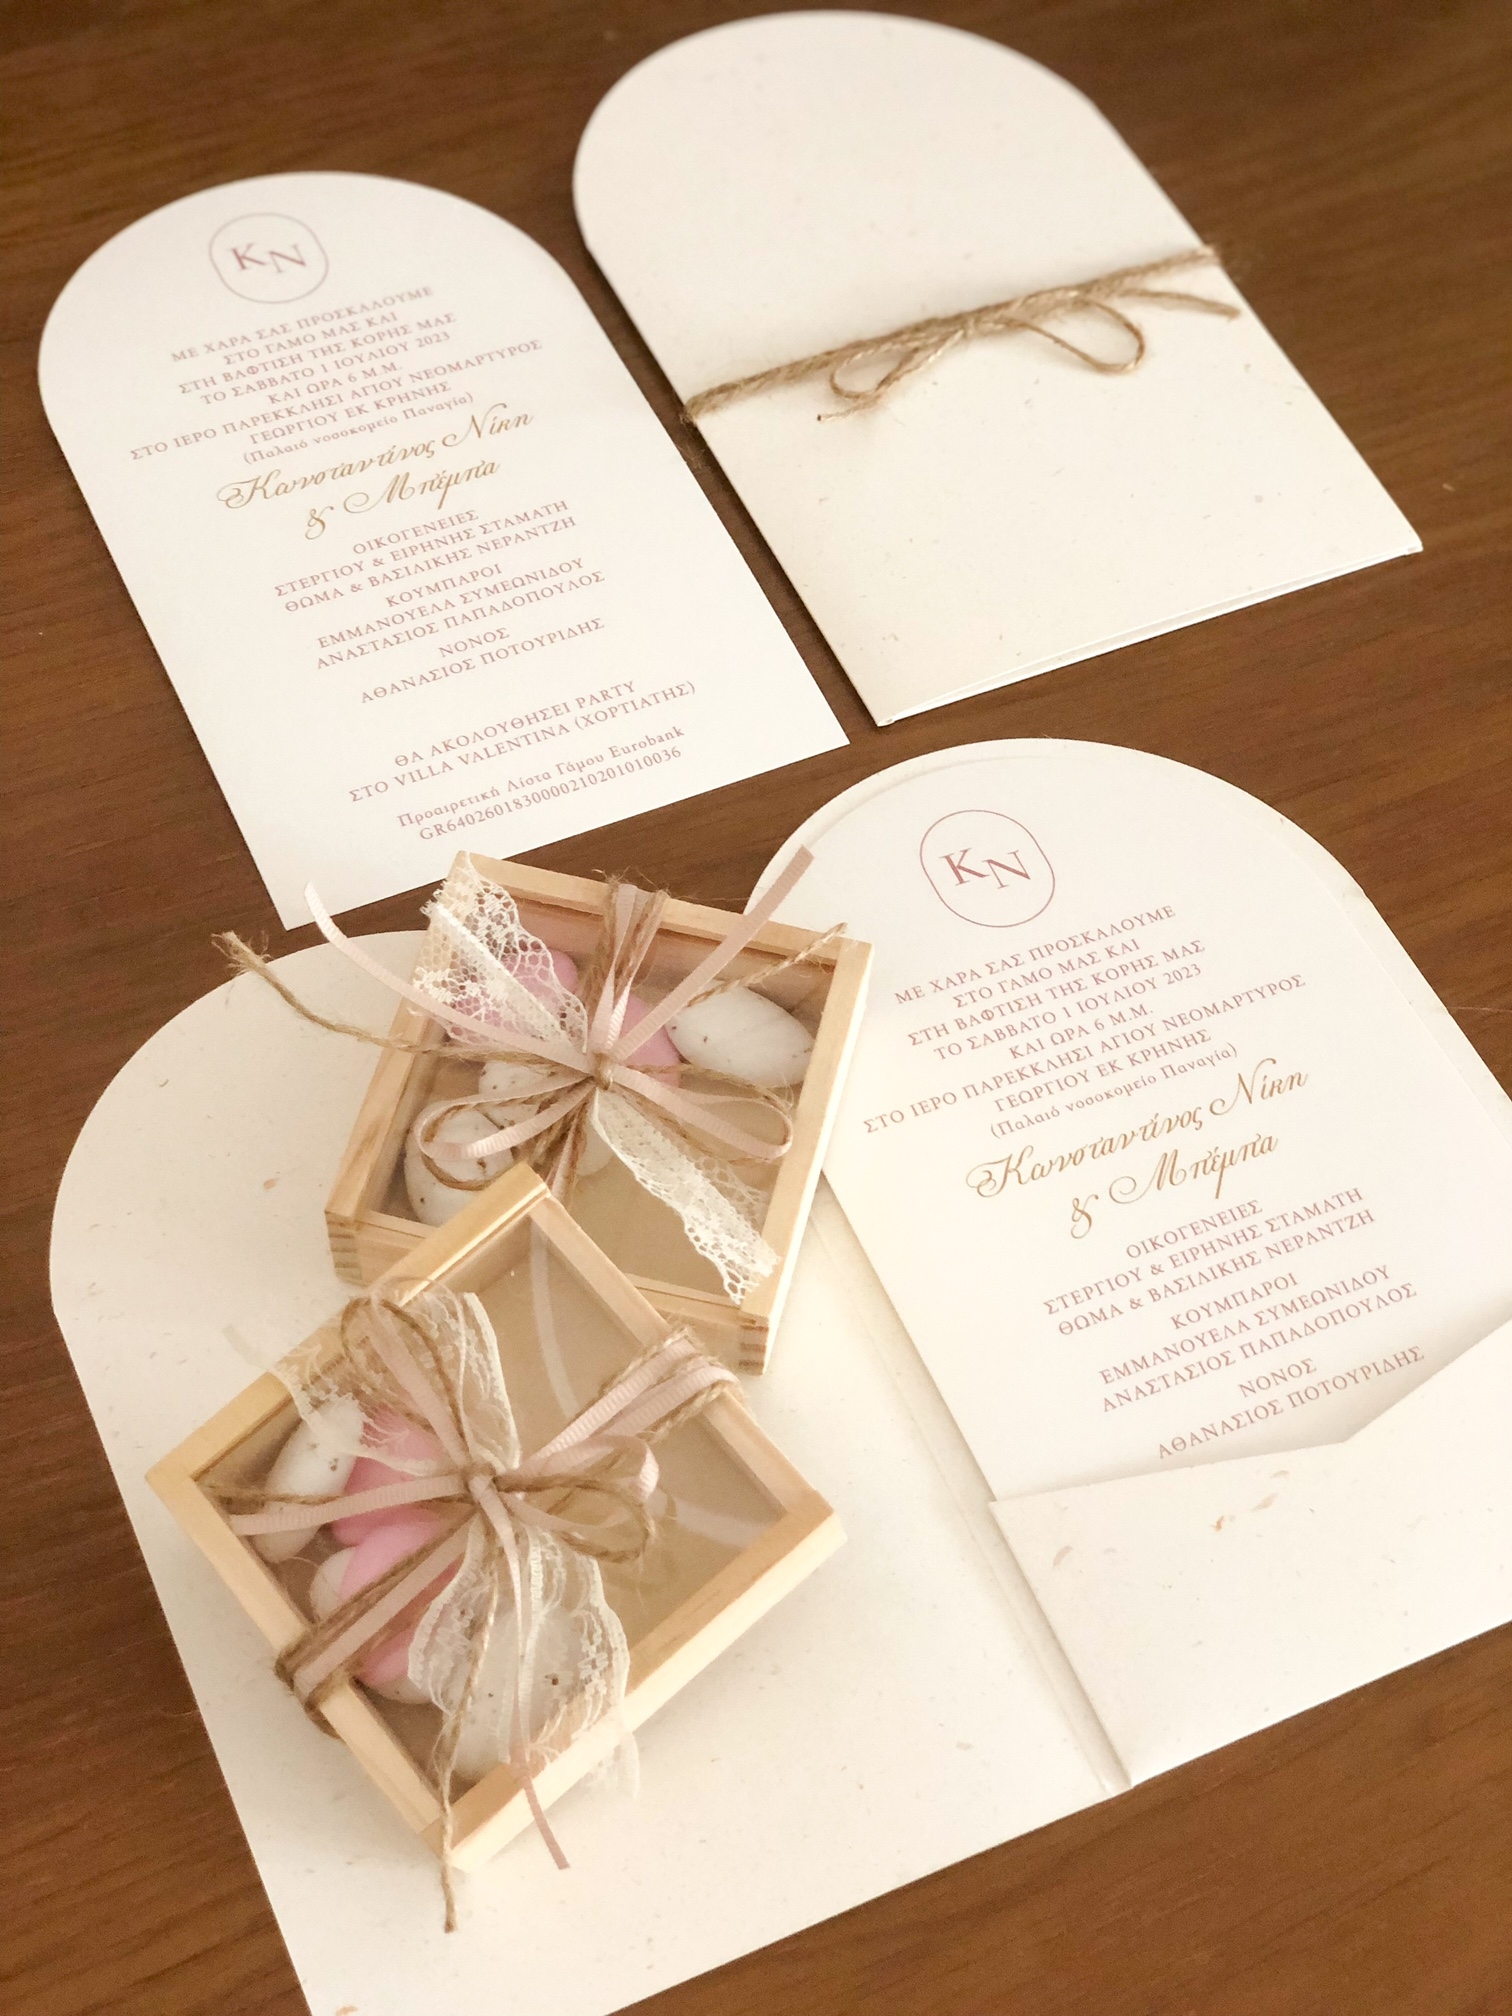 προσκλητήριο γάμου φάκελος καμπύλη καμάρα απλό μοντέρνο boho σχοινί ροζ χρυσό μονογράμματα μπομπονιέρα ξύλινο κουτί plexiglass κουφέτα χατζηγια : 1